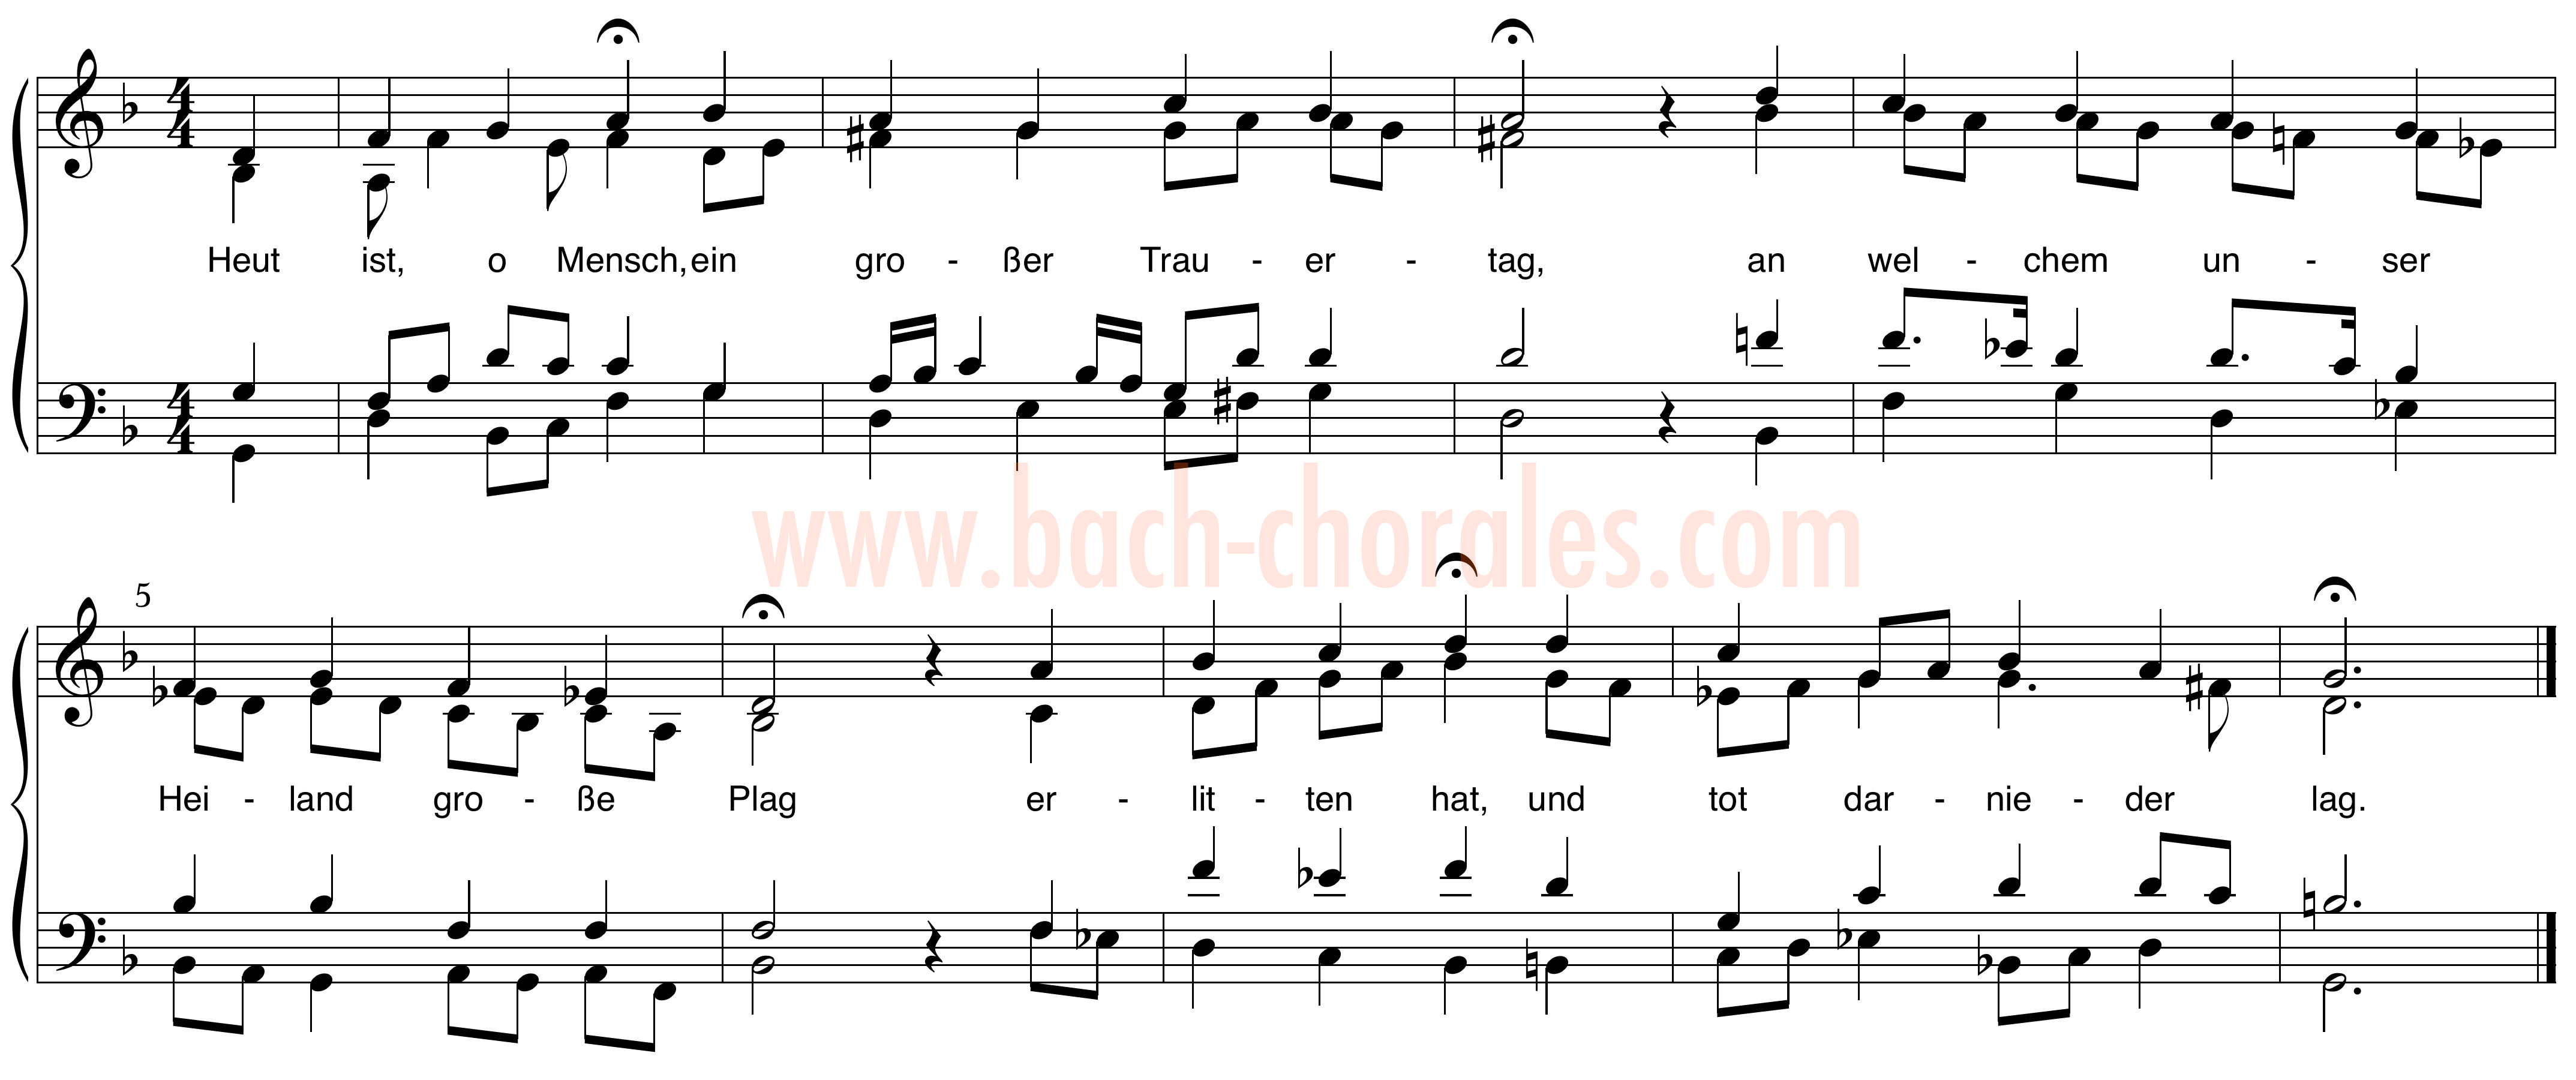 notenbeeld BWV 341 op https://www.bach-chorales.com/